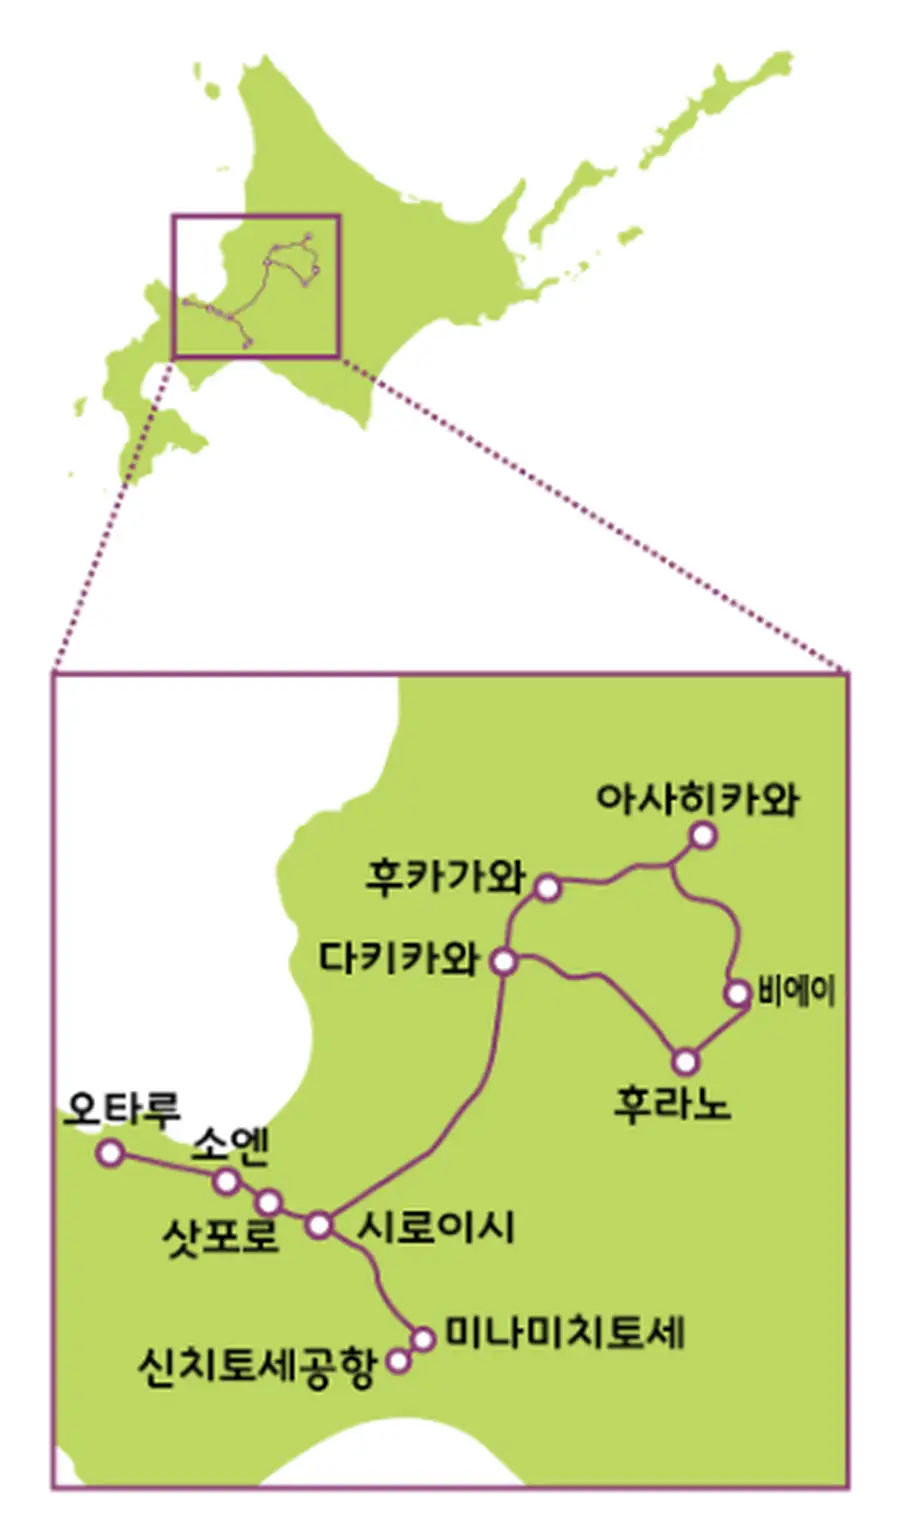 JR 홋카이도 레일패스 삿포로-후라노 에리어 이용가능범위